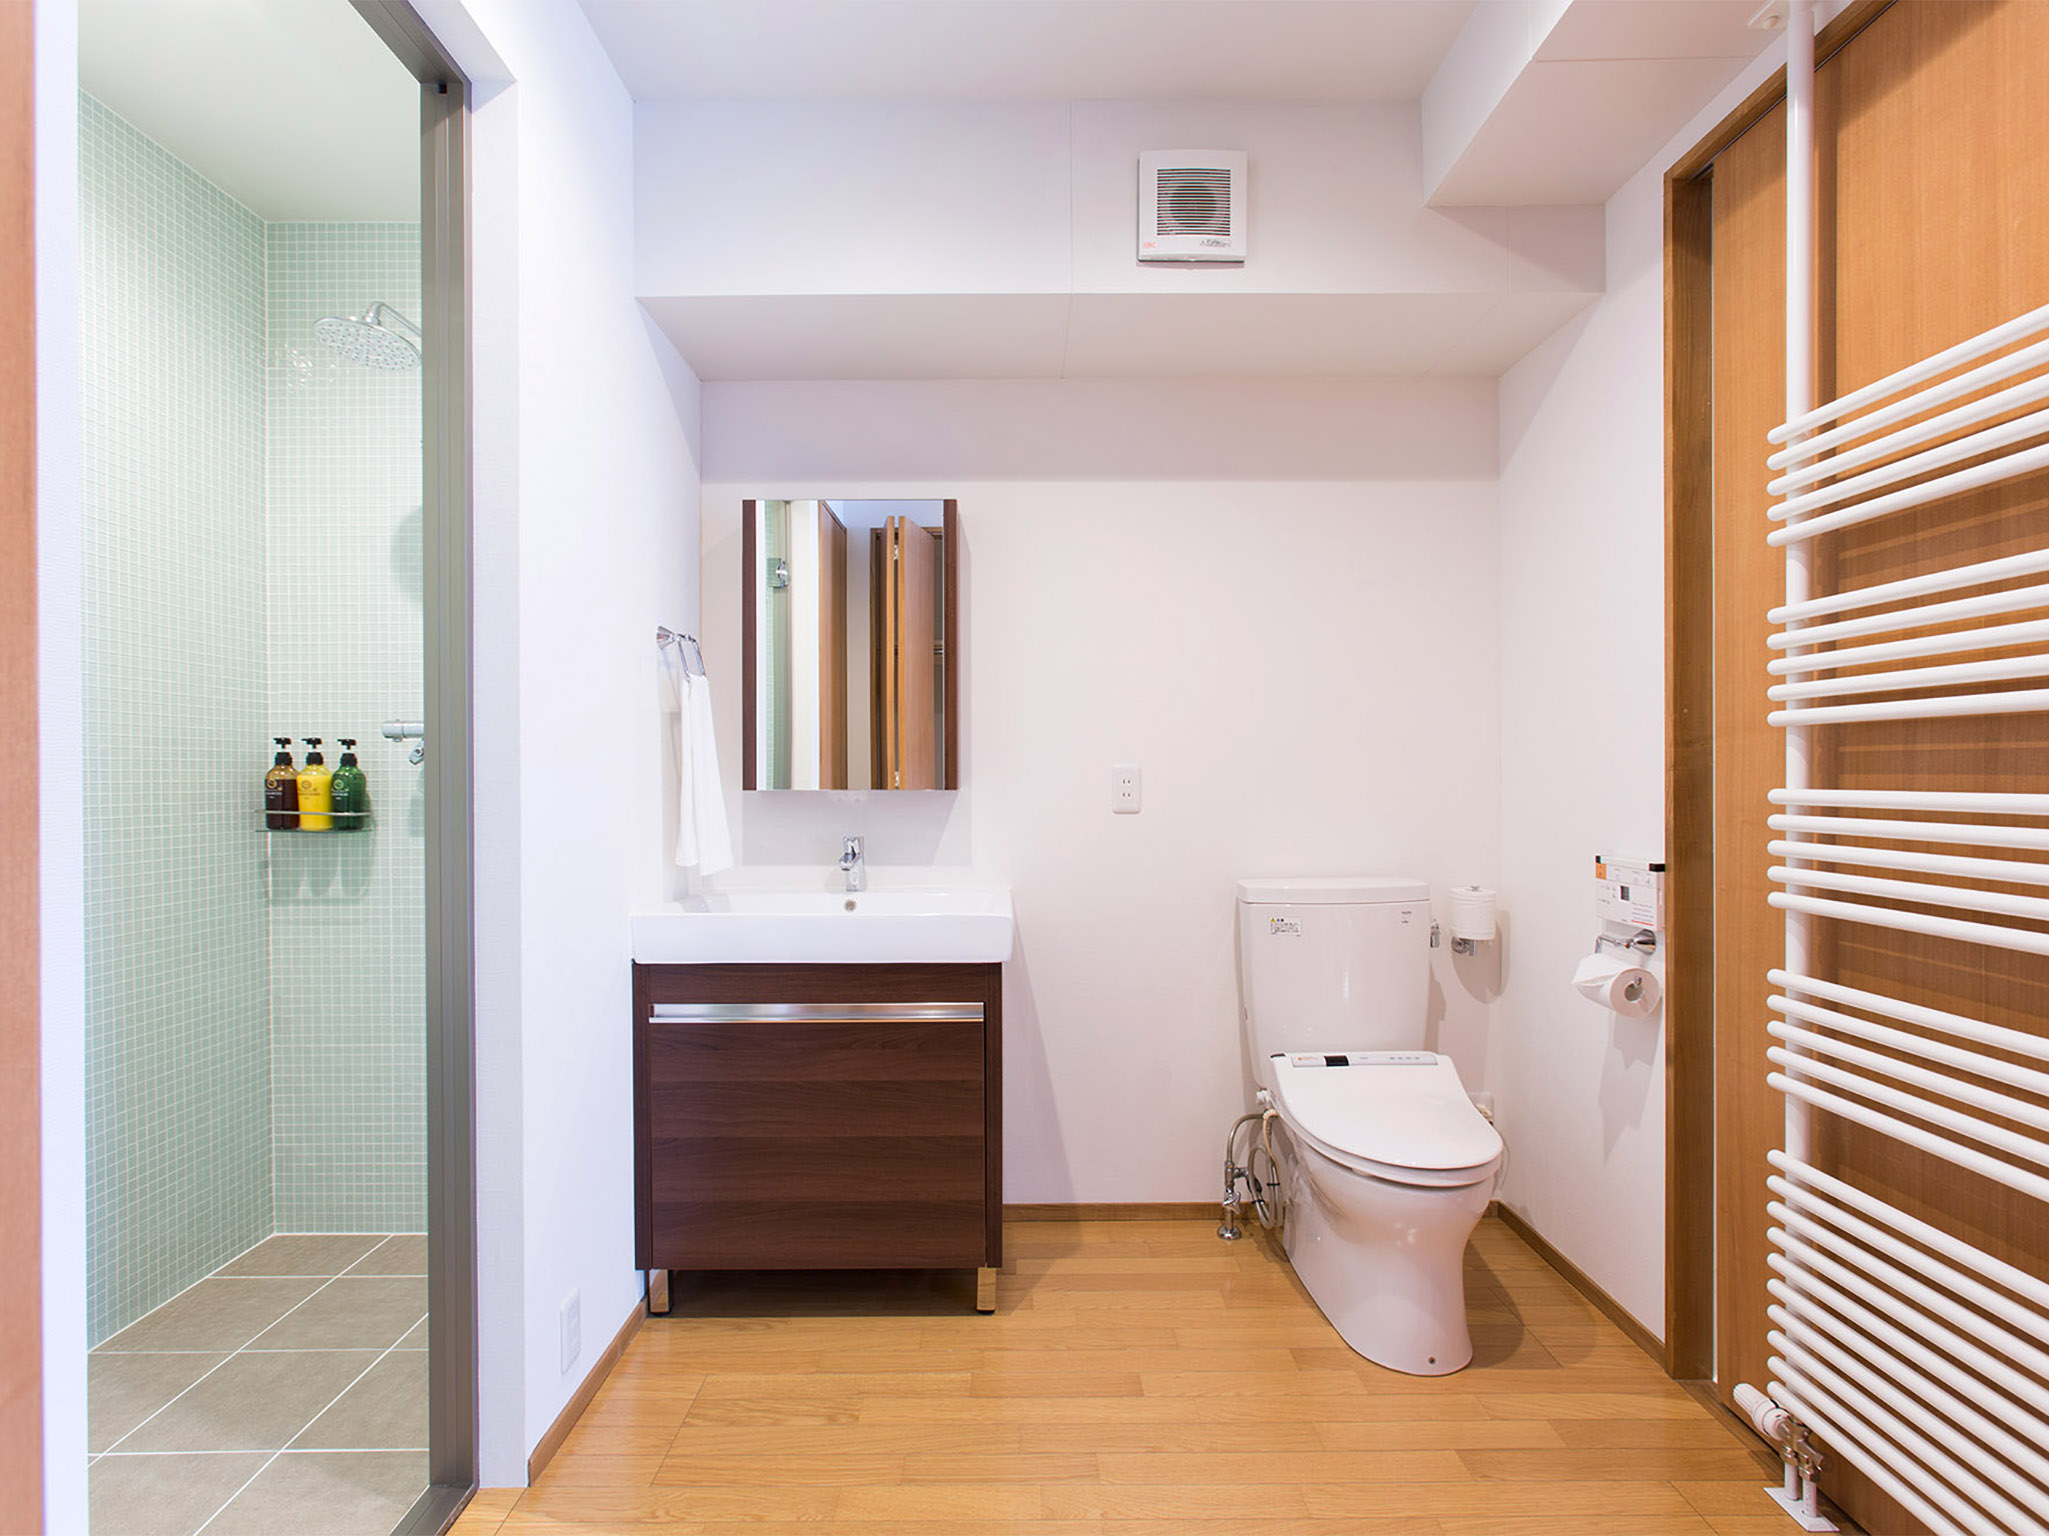 Kita Kitsune Chalet - Bathroom design